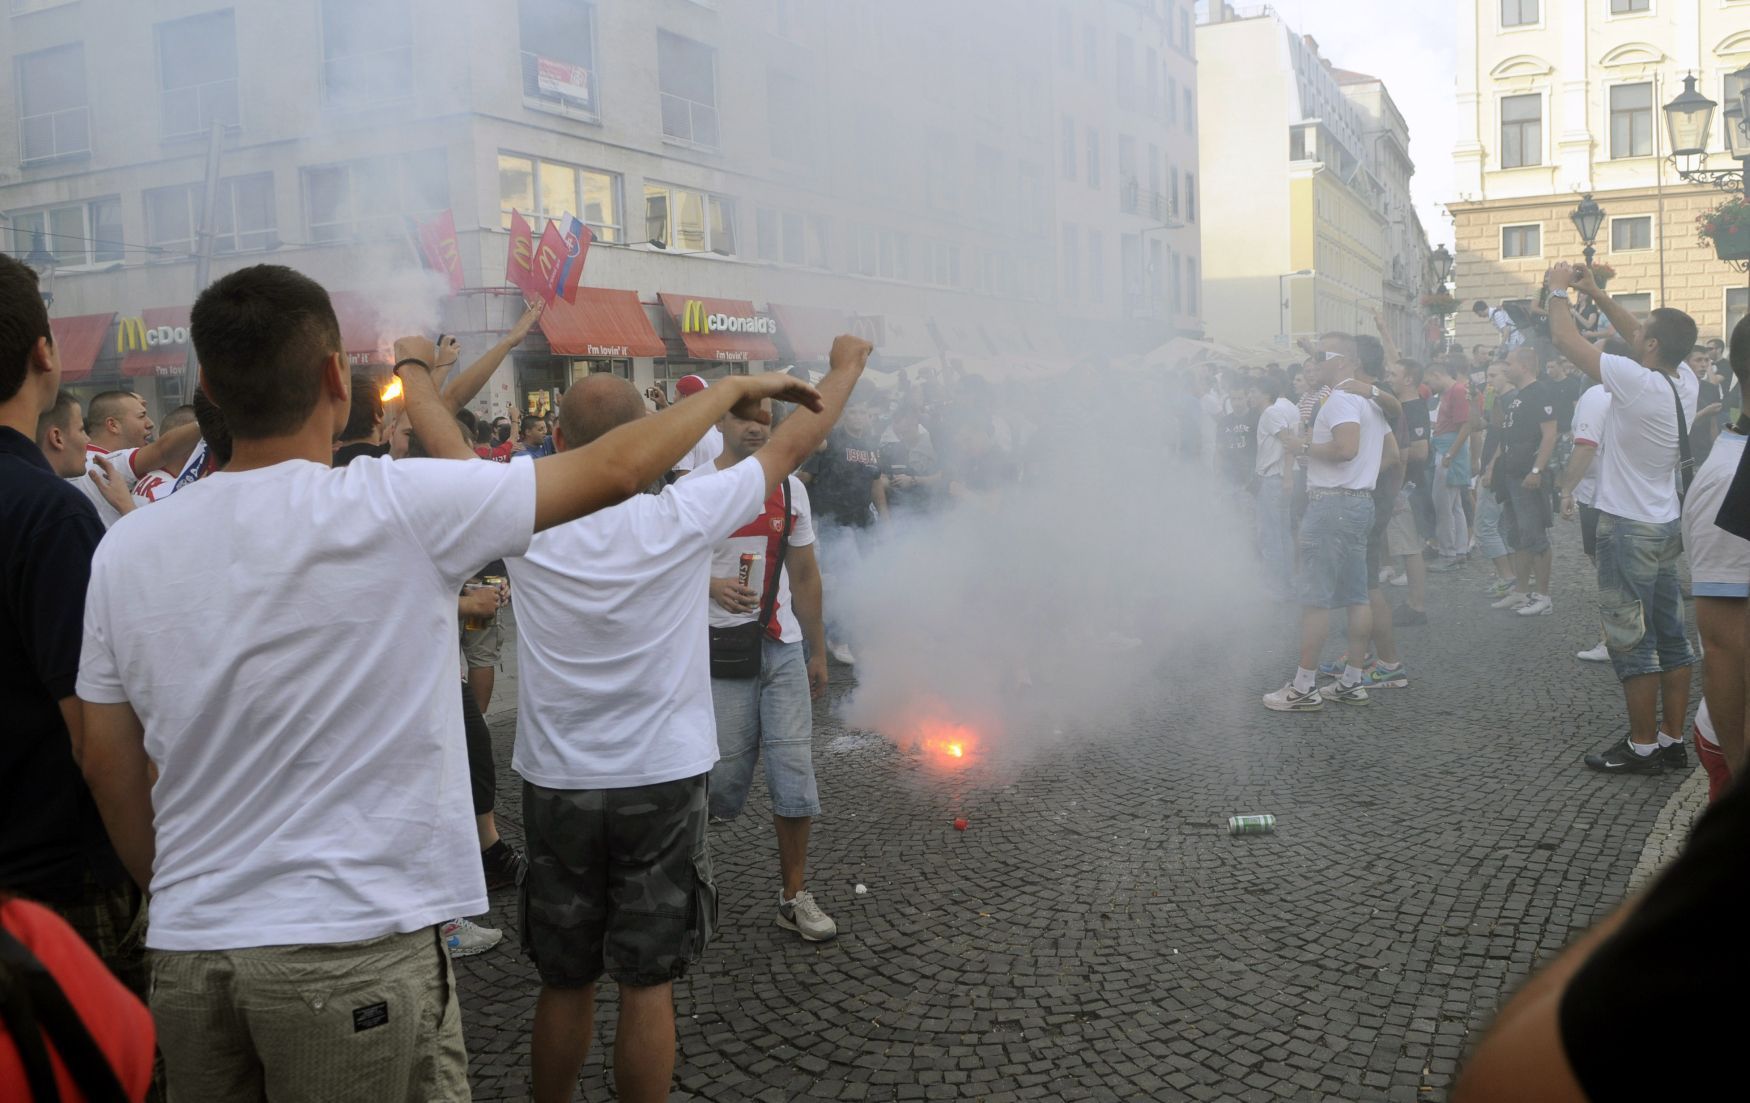 Crvena Zvezda Bělehrad: řádění fanoušků